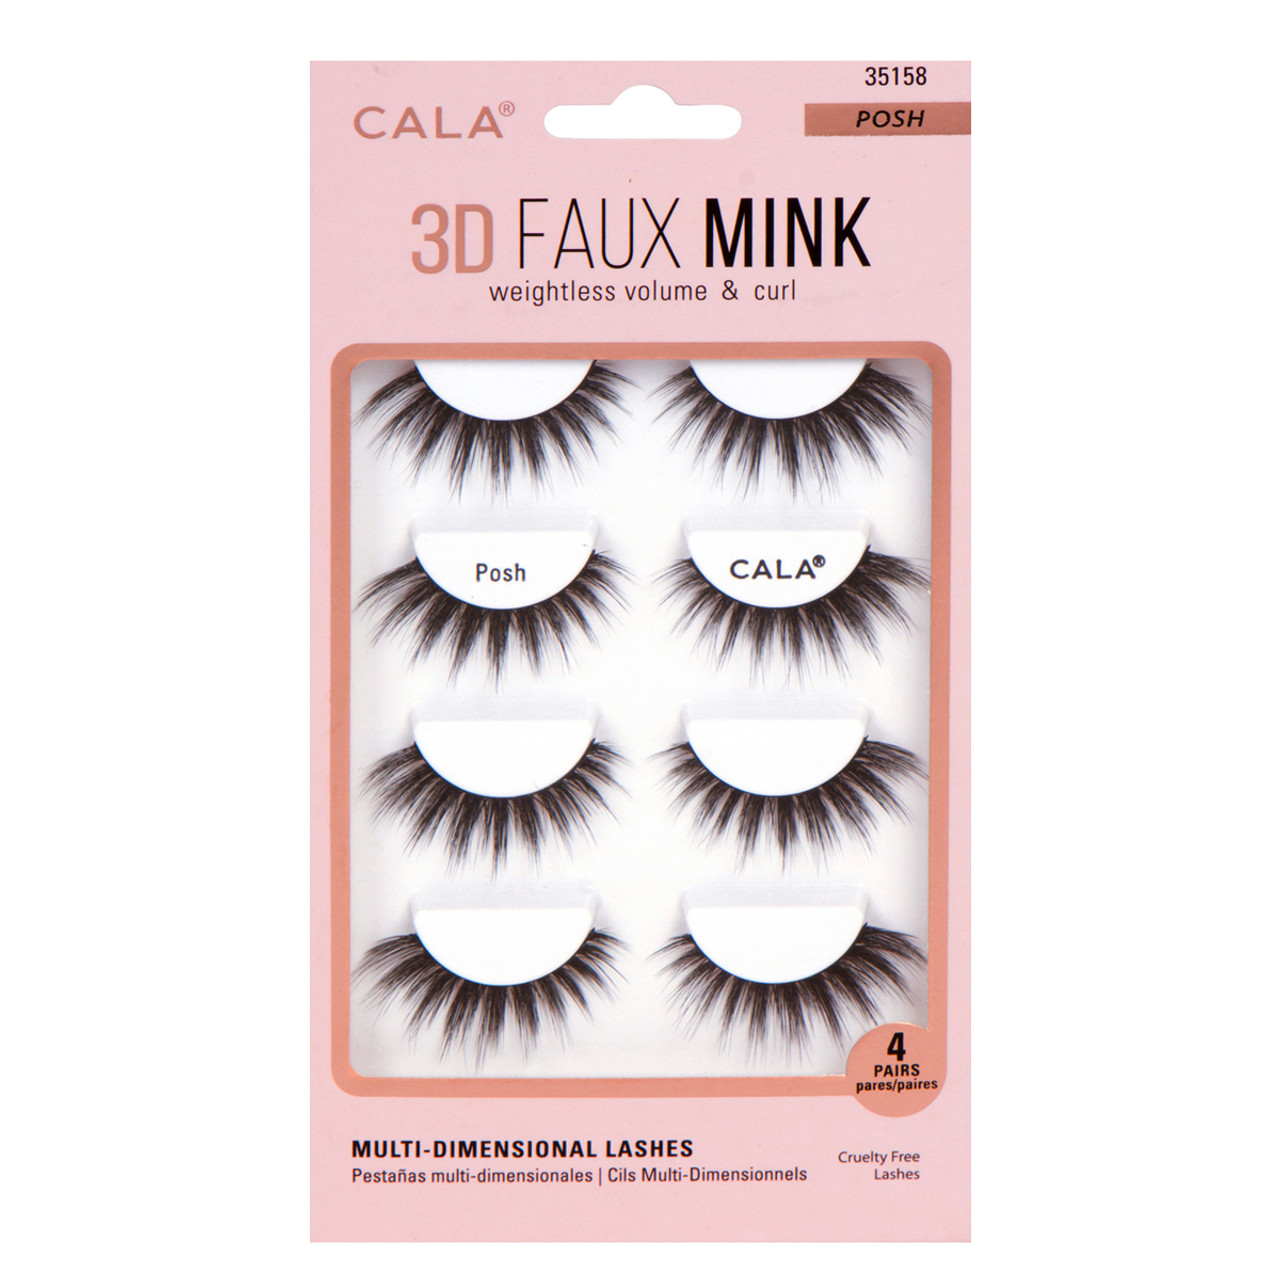 CALA® 3D Faux Mink Lashes - Cashmere (4 Pair / Pack)